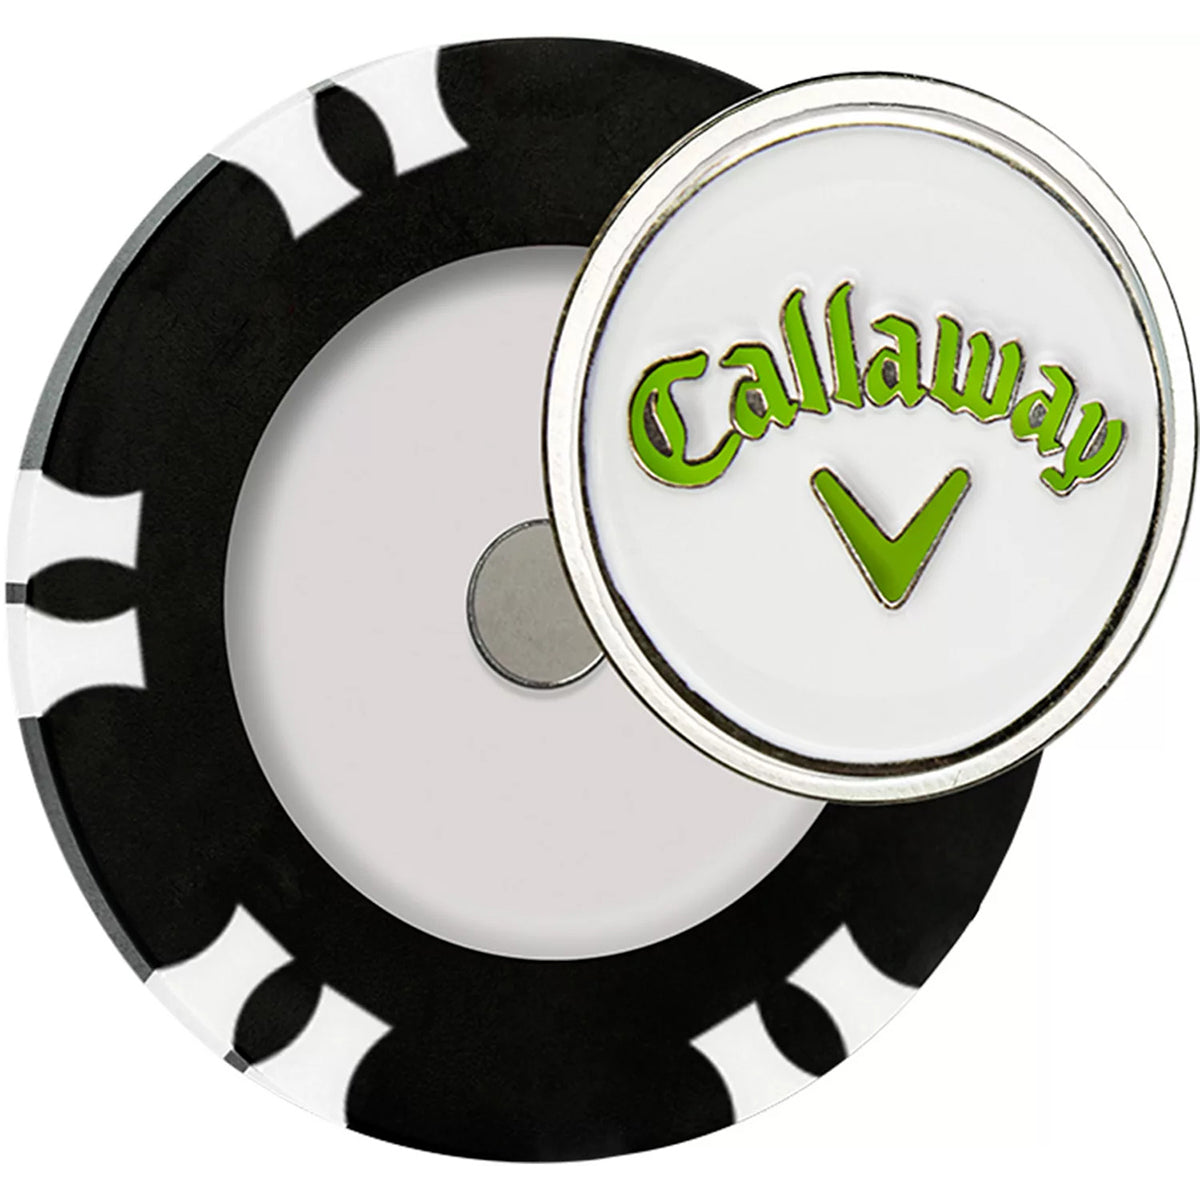 Callaway Dual-Mark Poker Chip Golf Ball Marker Callaway